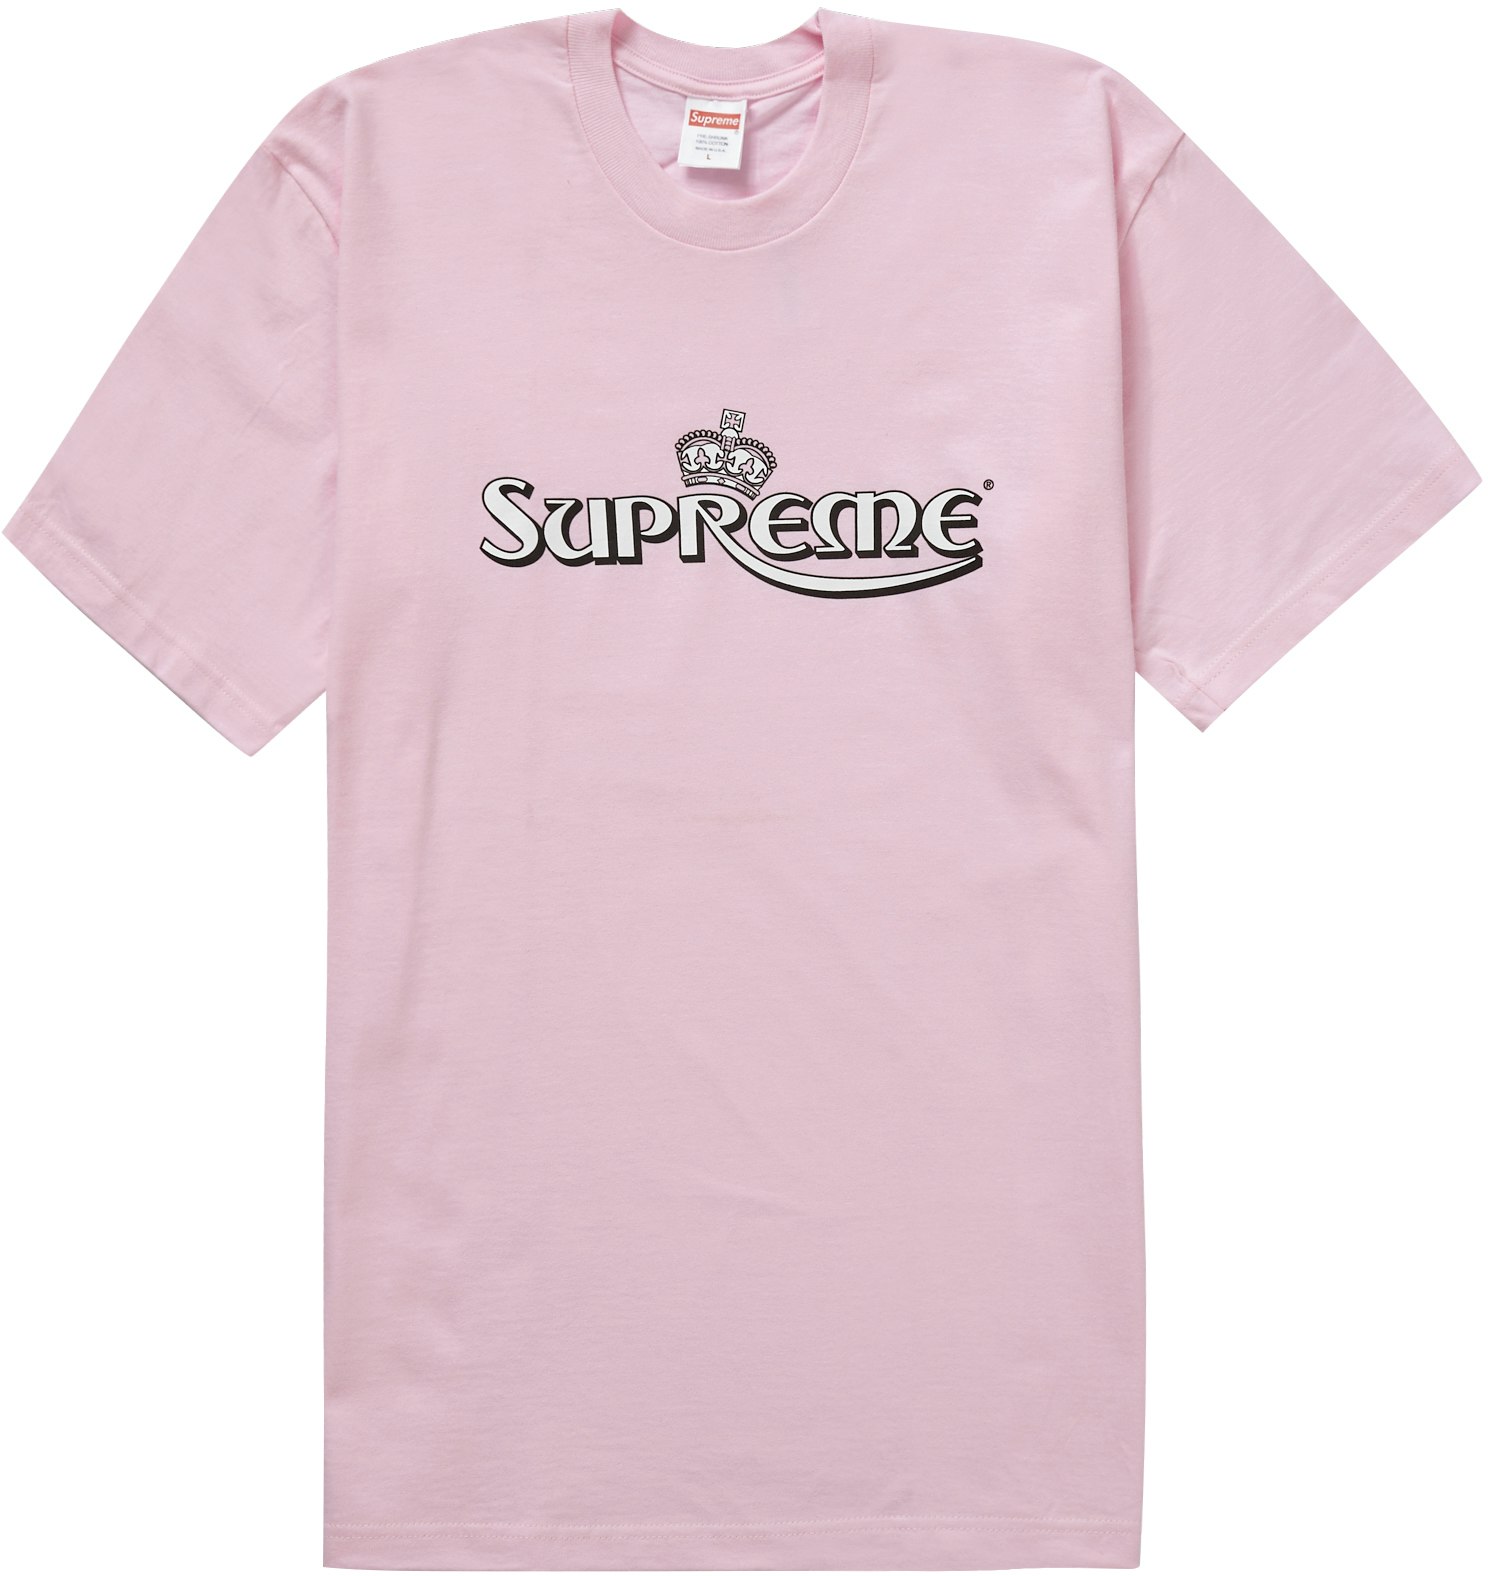 Supreme Crown Tee Light Pink - Novelship